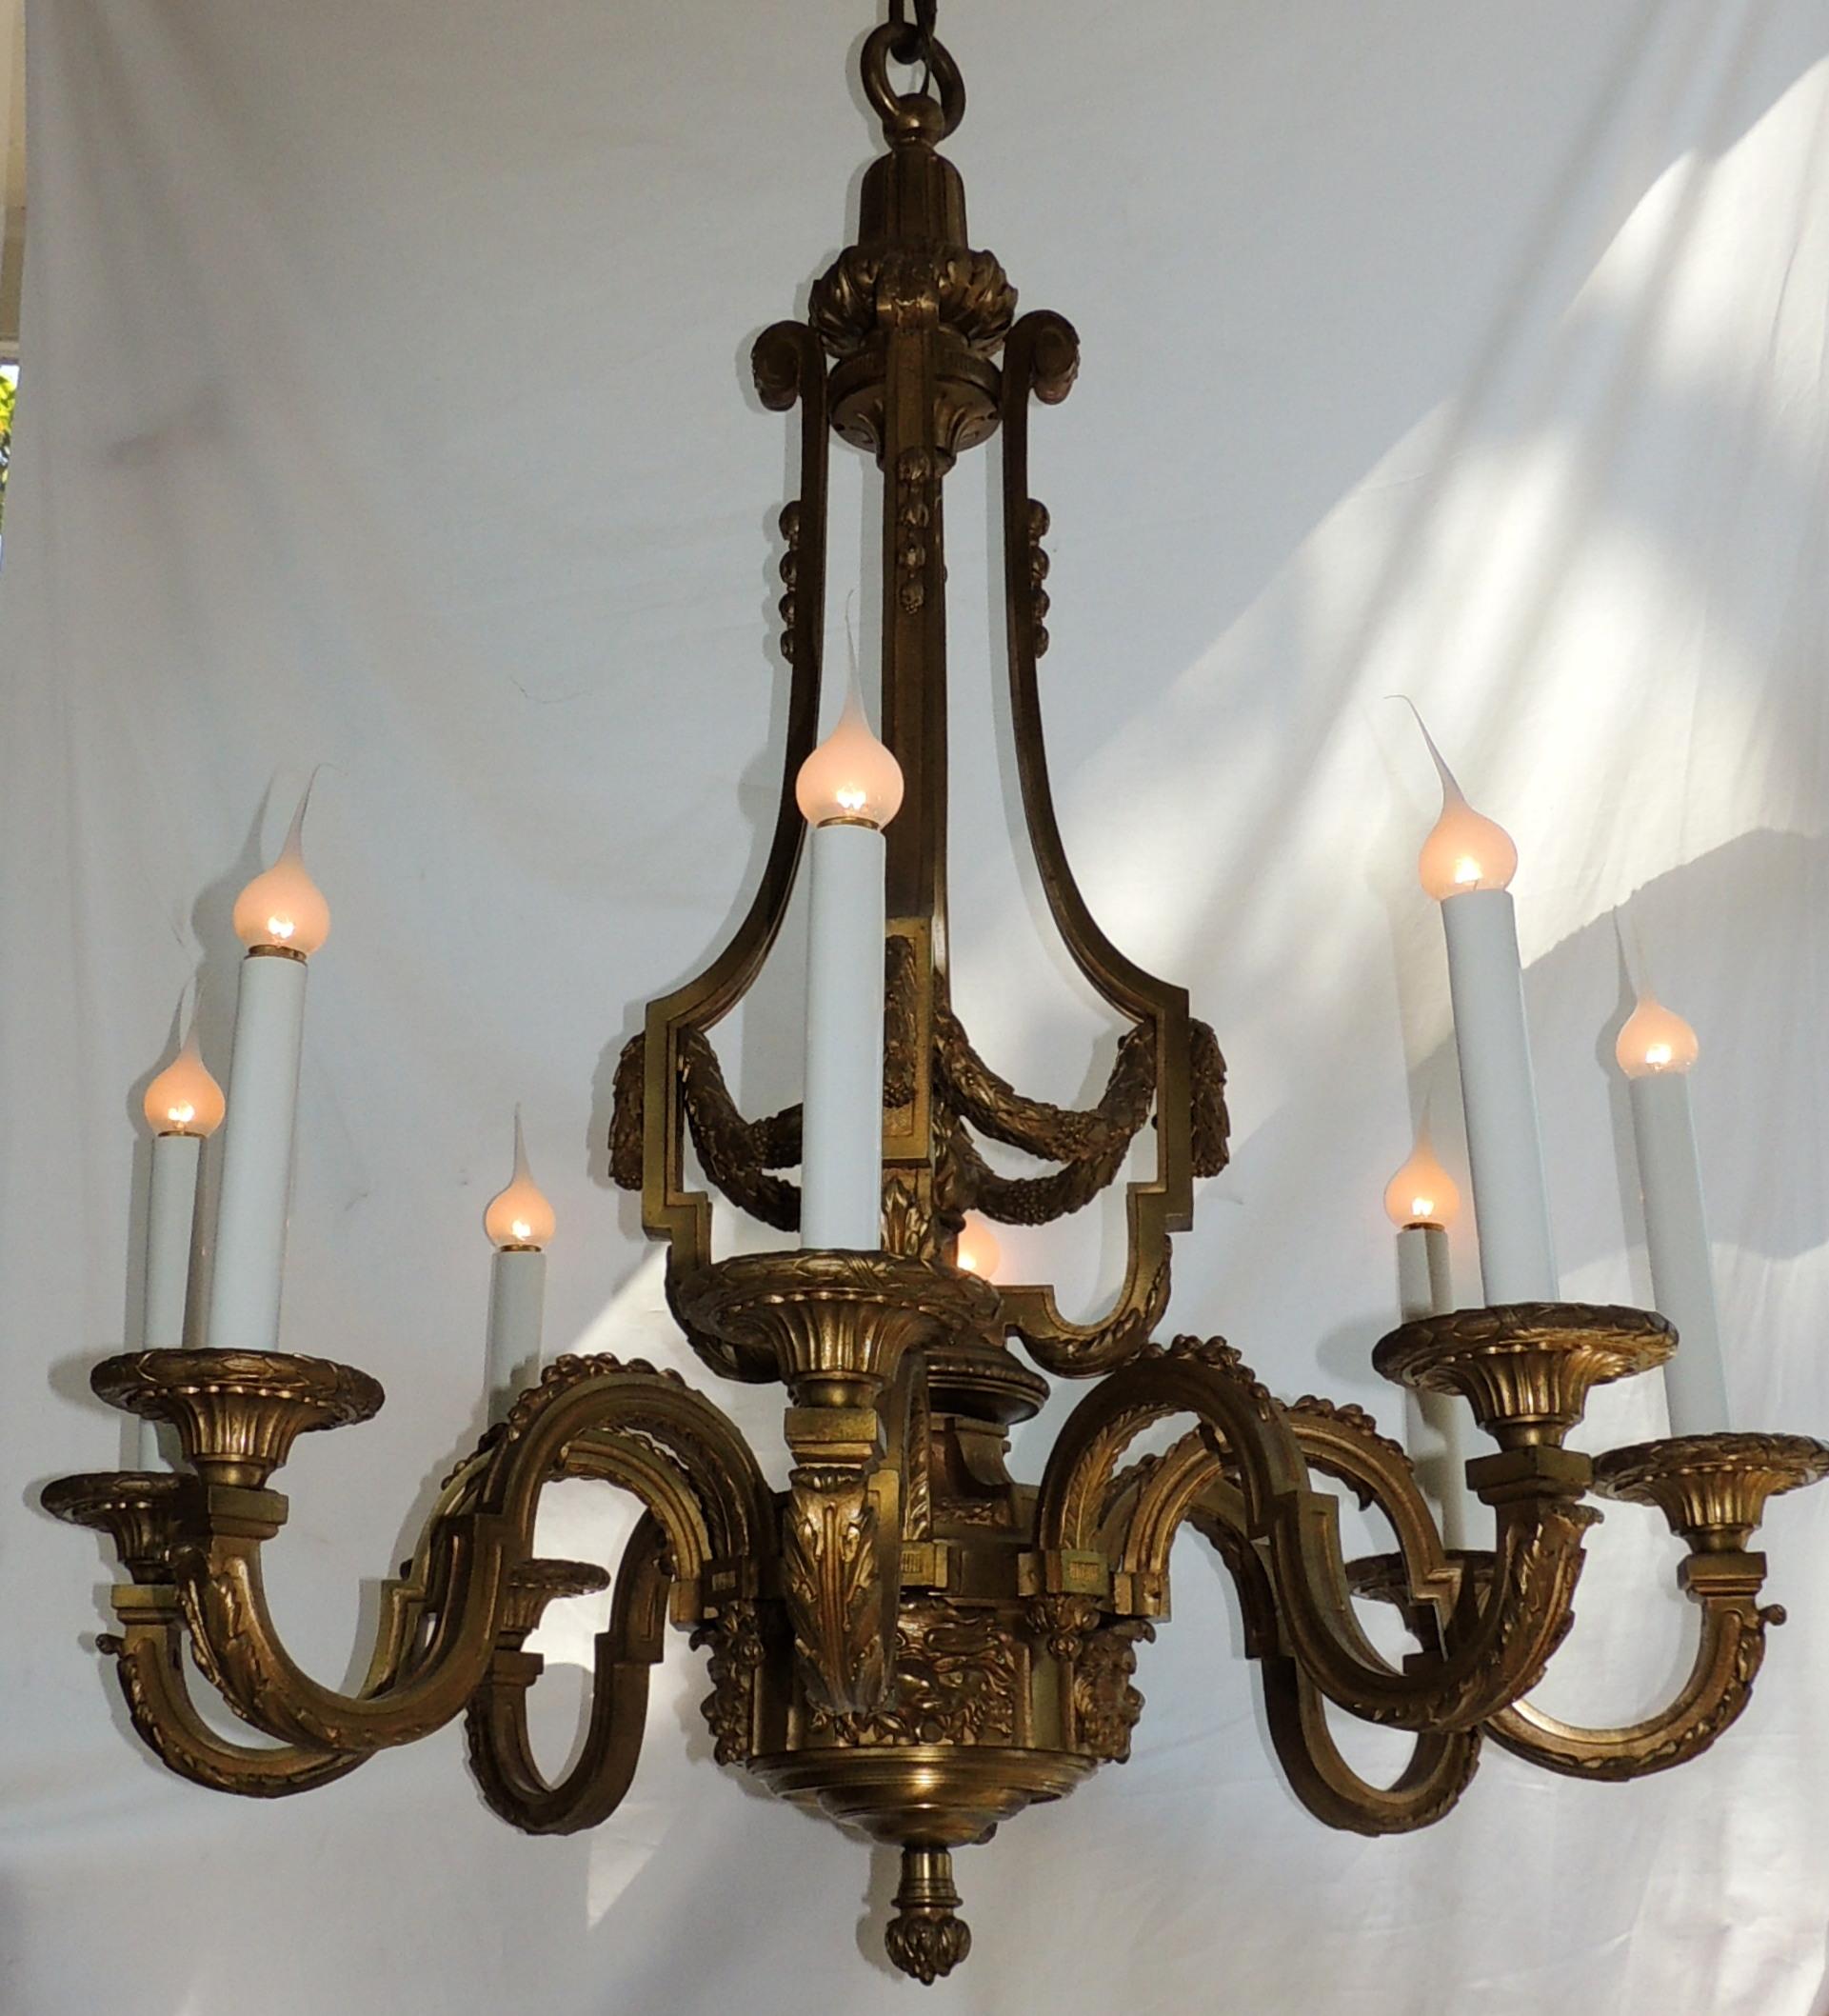 Incroyable lustre à huit lumières signé Henri Viane en bronze doré néoclassique français.
Henri Viane, (1860-1905) était un célèbre bronzier parisien, spécialisé dans la production de bronzes dans le style du XVIIIe siècle et dans l'ornementation